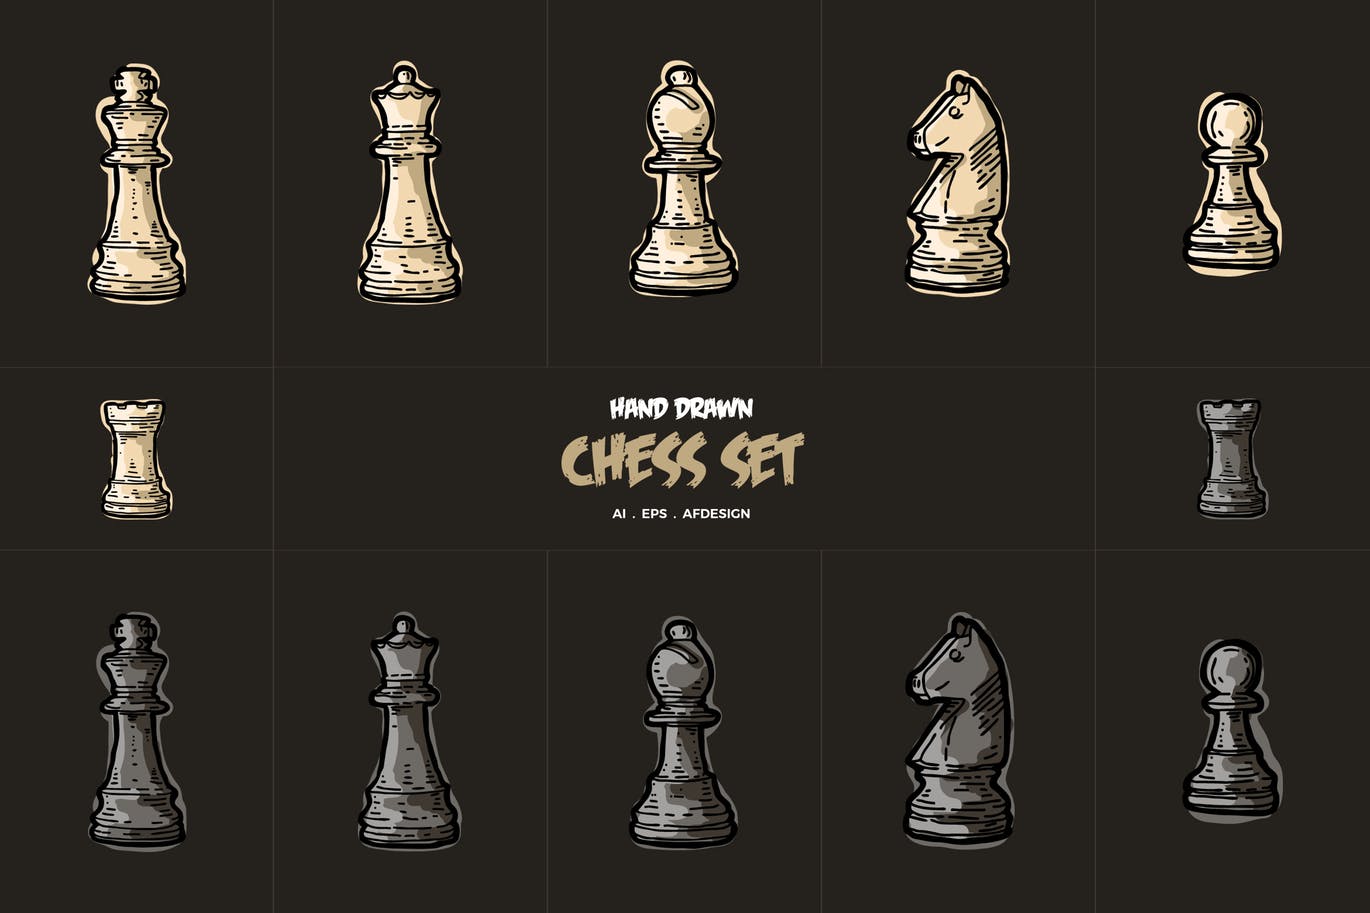 12枚手绘风格国际象棋棋子矢量素材 Hand Drawn Chess Collections插图